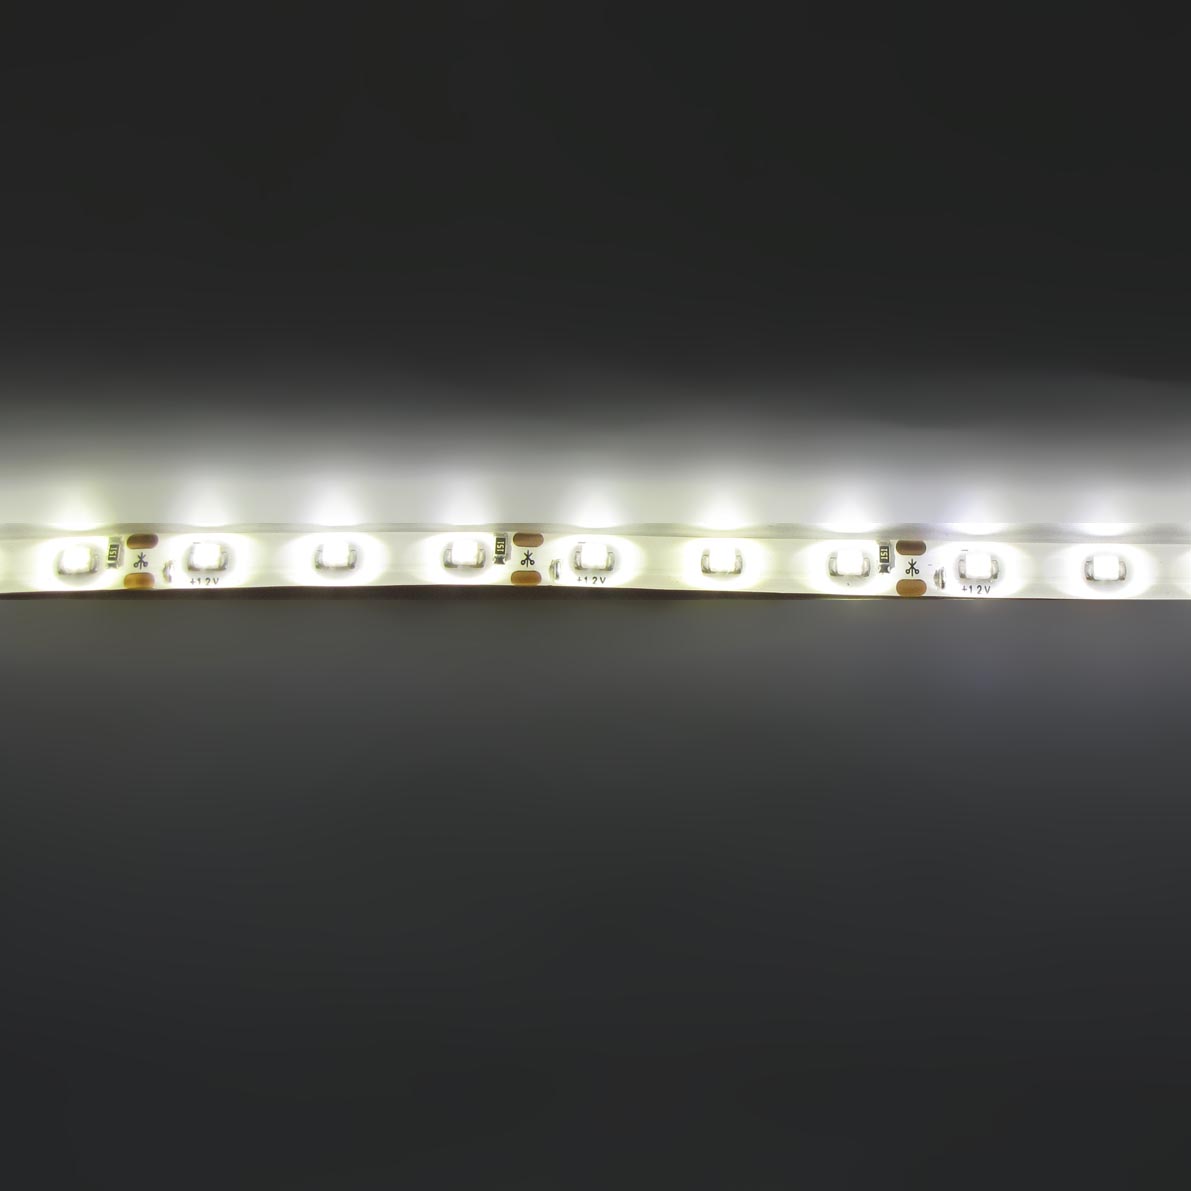 светодиодная лента standart class, 3528, 60led/m, warm white, 12v, ip65, артикул 52704